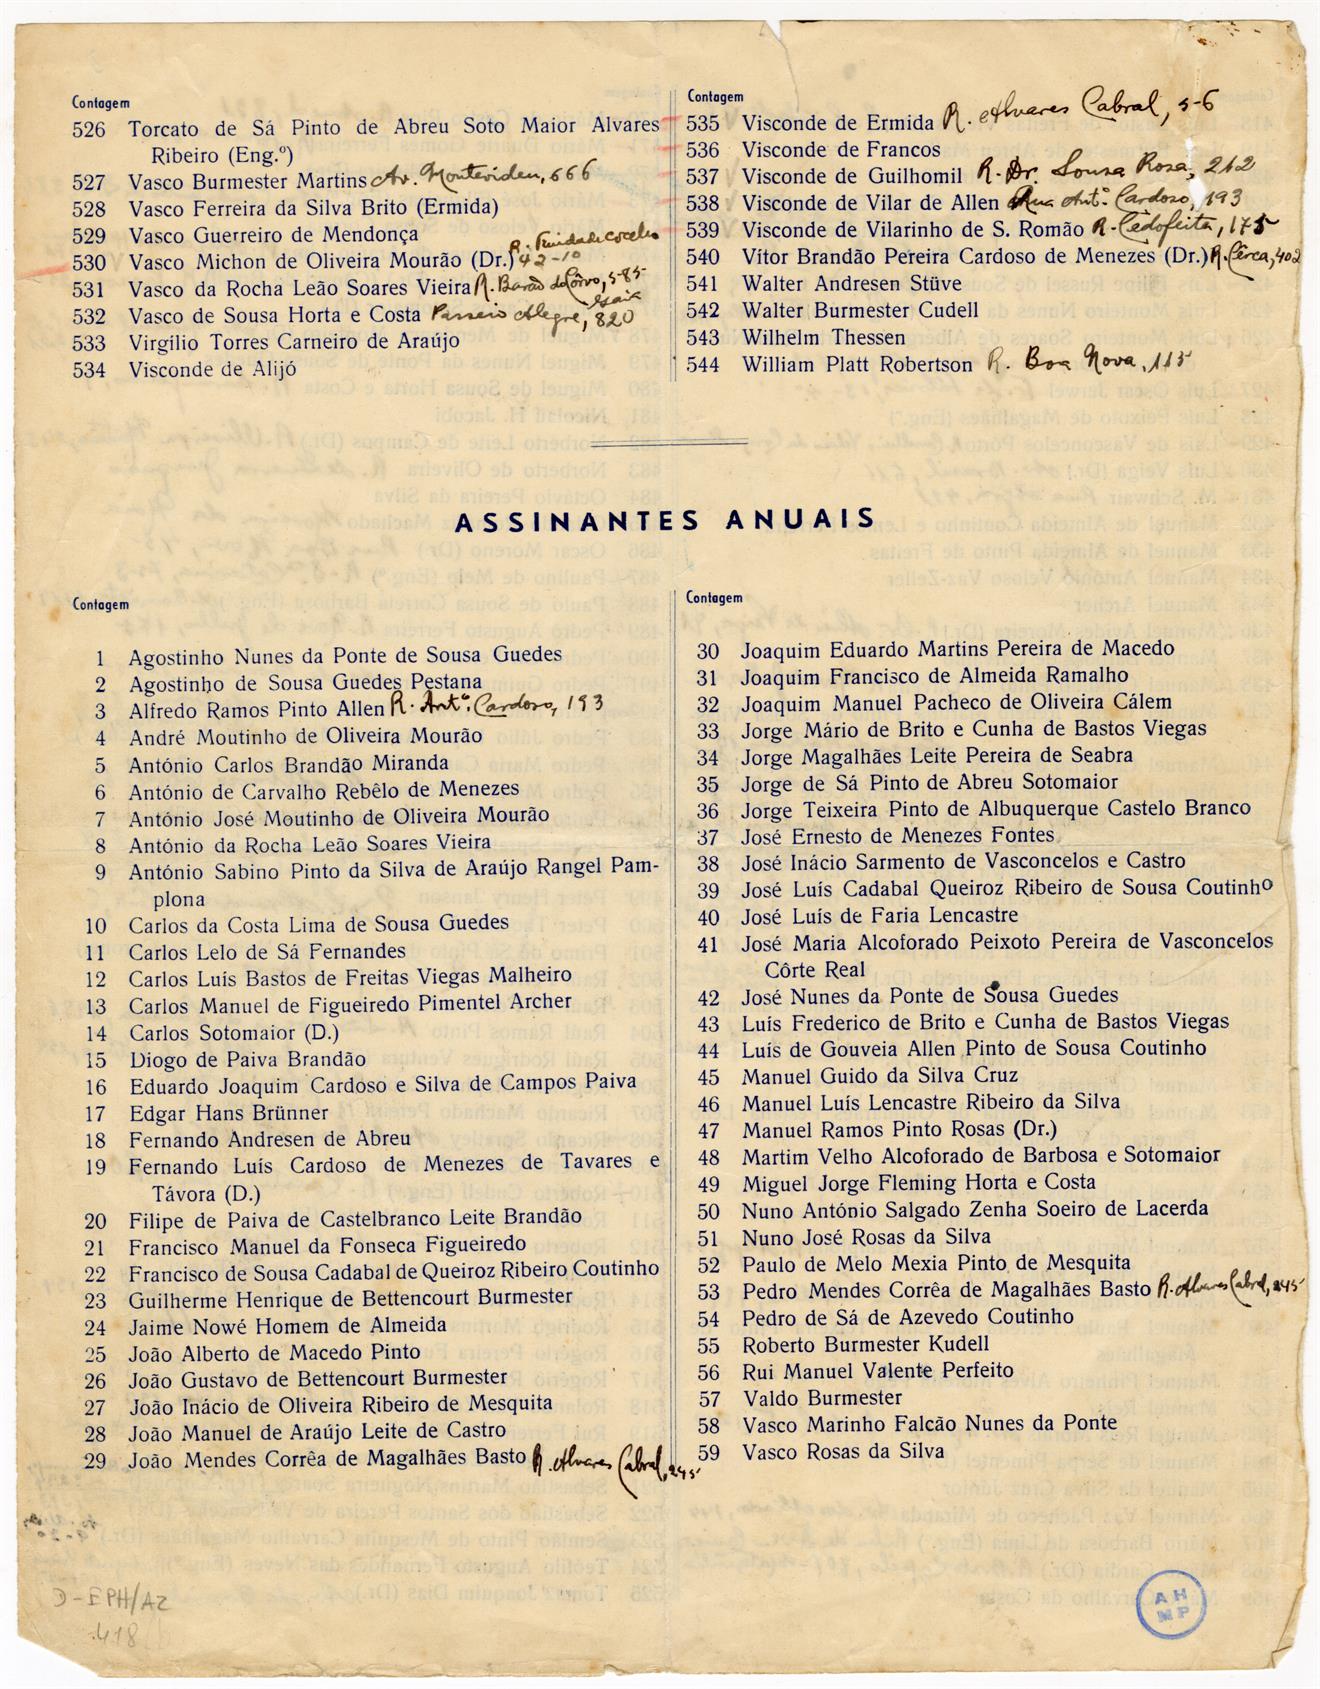 Clube Portuense: lista dos sócios em 31 de dezembro de 1944